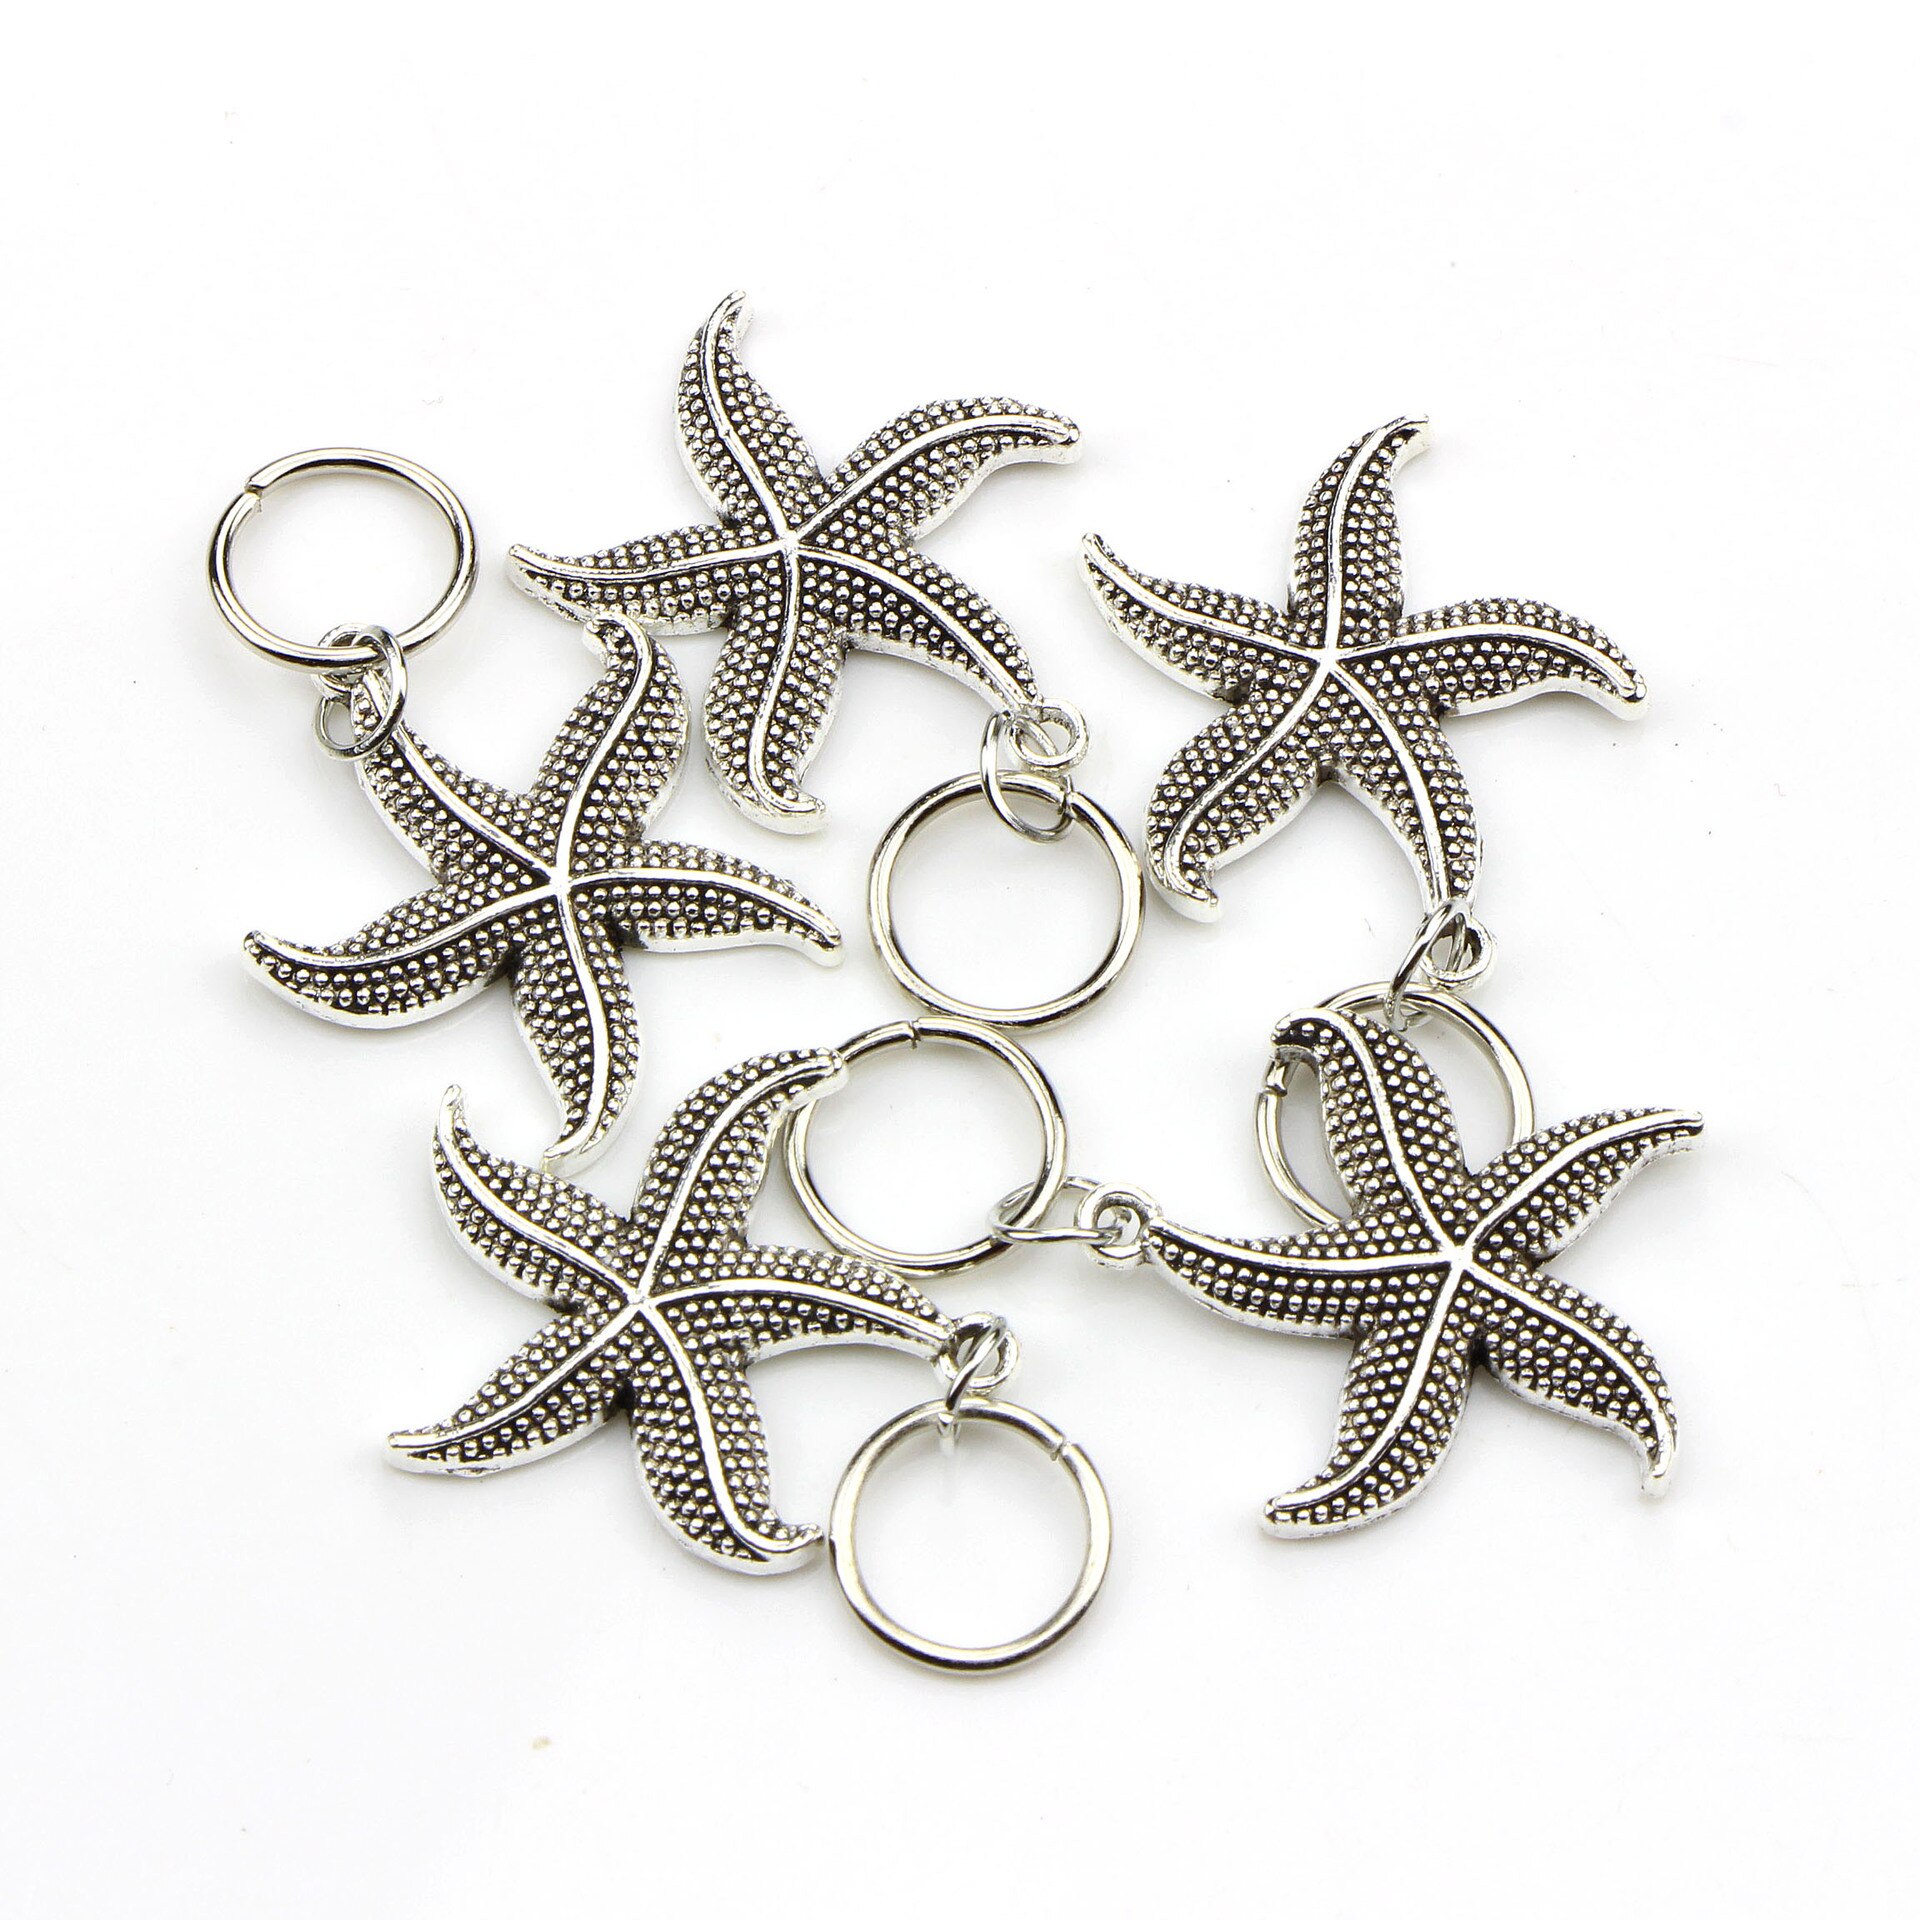 50 stk/pak sølv skildpaddeskal ocean charms hår fletning dreadlock perler clips manchetter ringe smykker dreadlock tilbehør